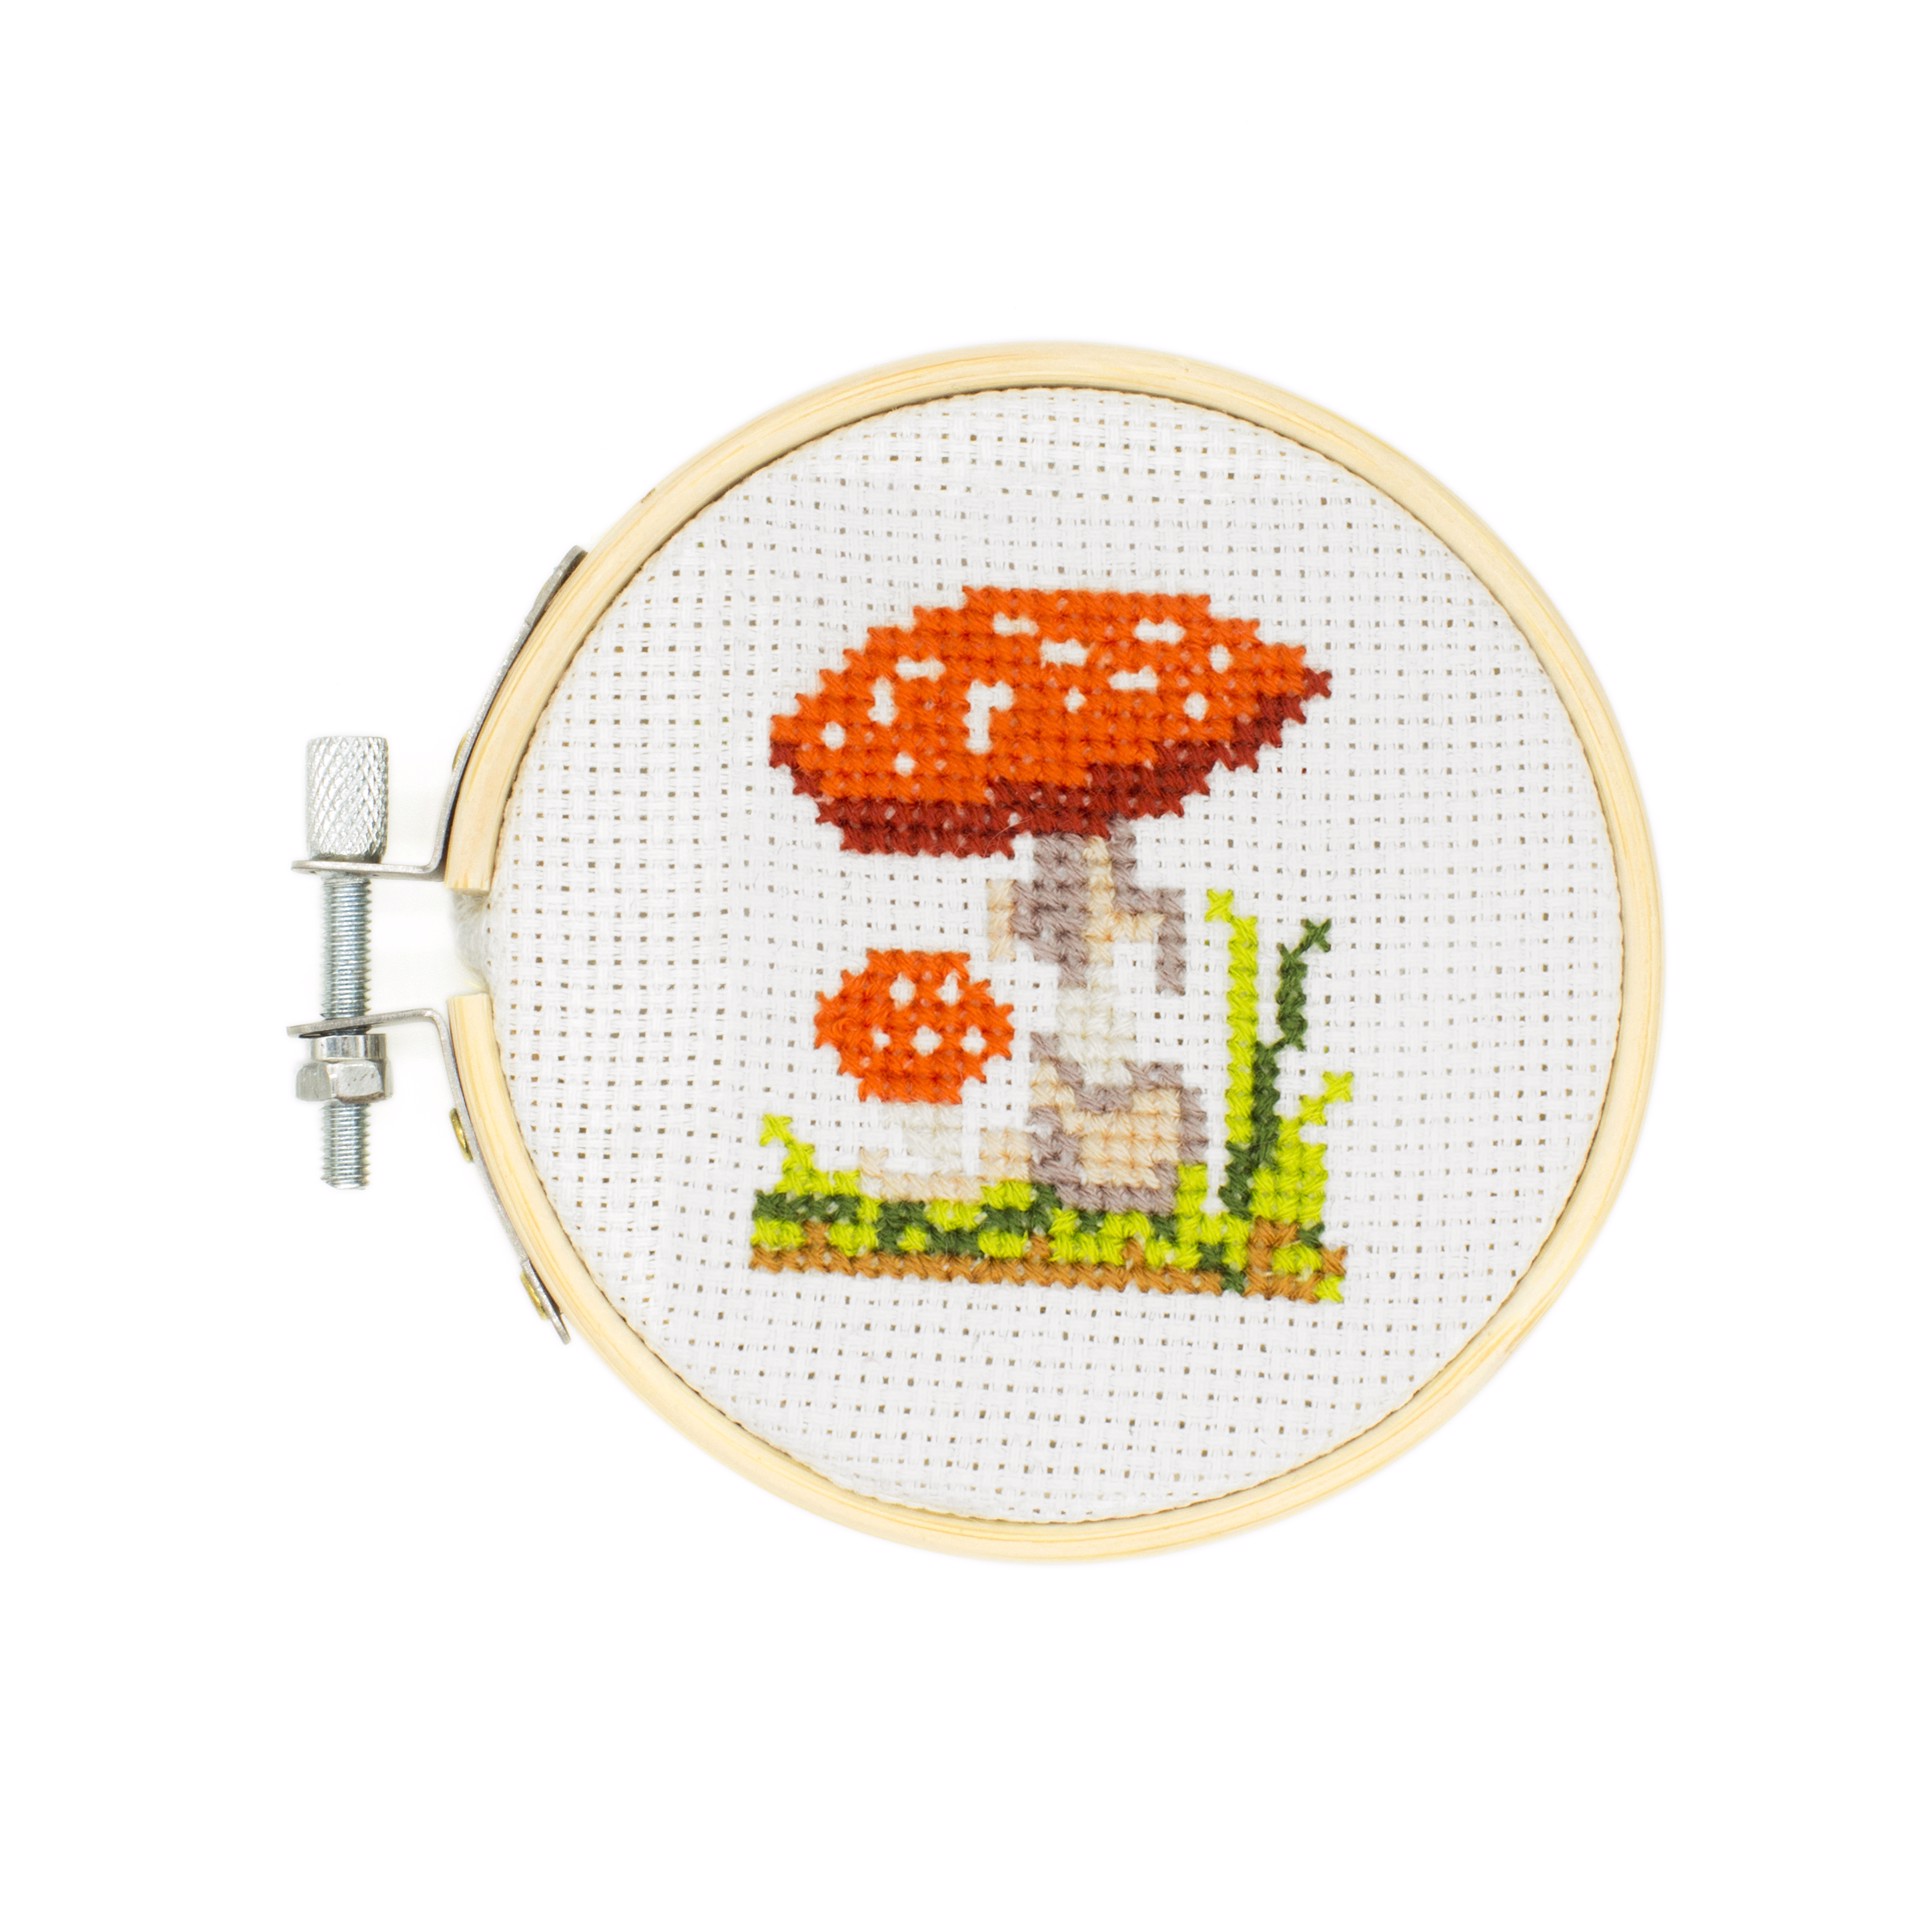 Mini Cross Stitch Kit - Mushroom by Chauvet Arts